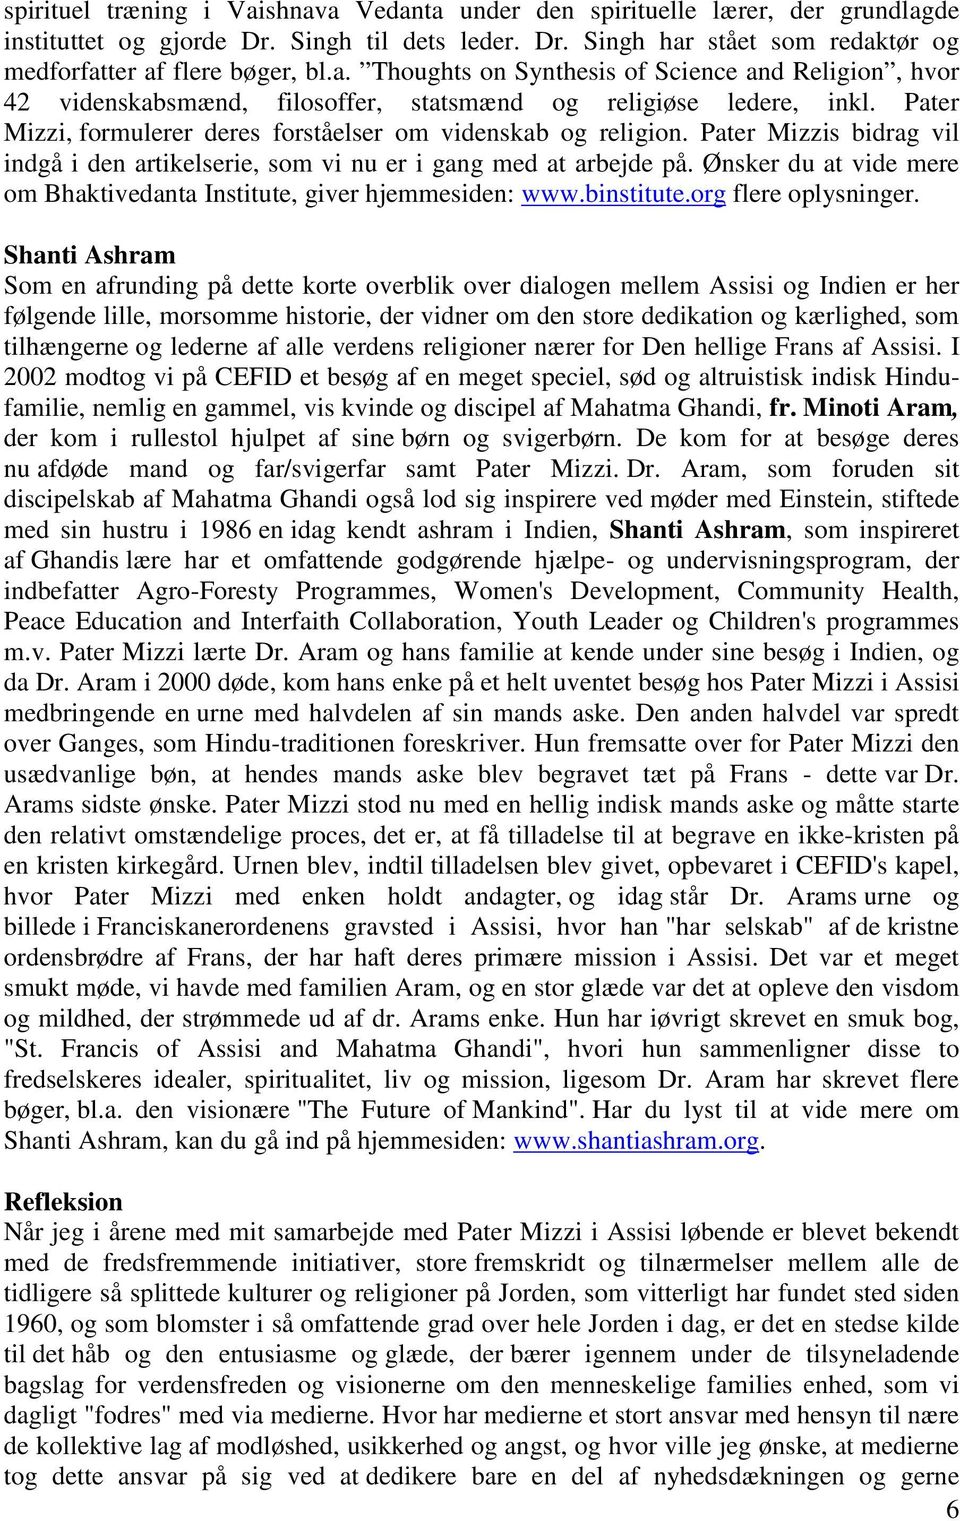 Ønsker du at vide mere om Bhaktivedanta Institute, giver hjemmesiden: www.binstitute.org flere oplysninger.